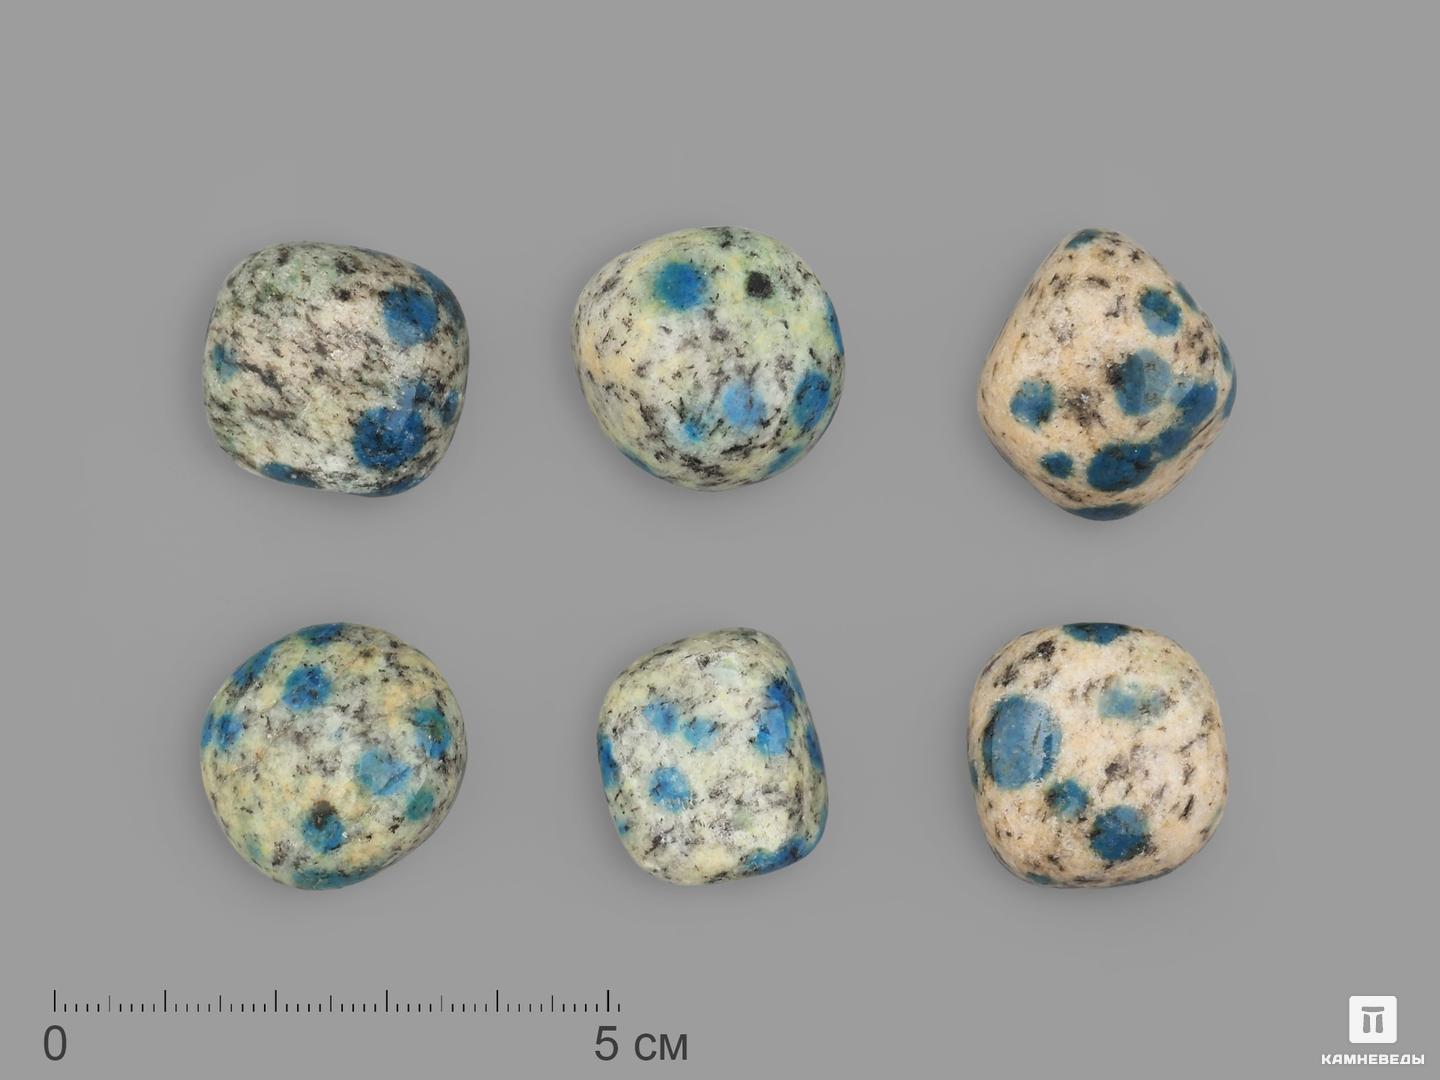 Азурит в граните (камень K2), галтовка || категории, 2-2,5 см